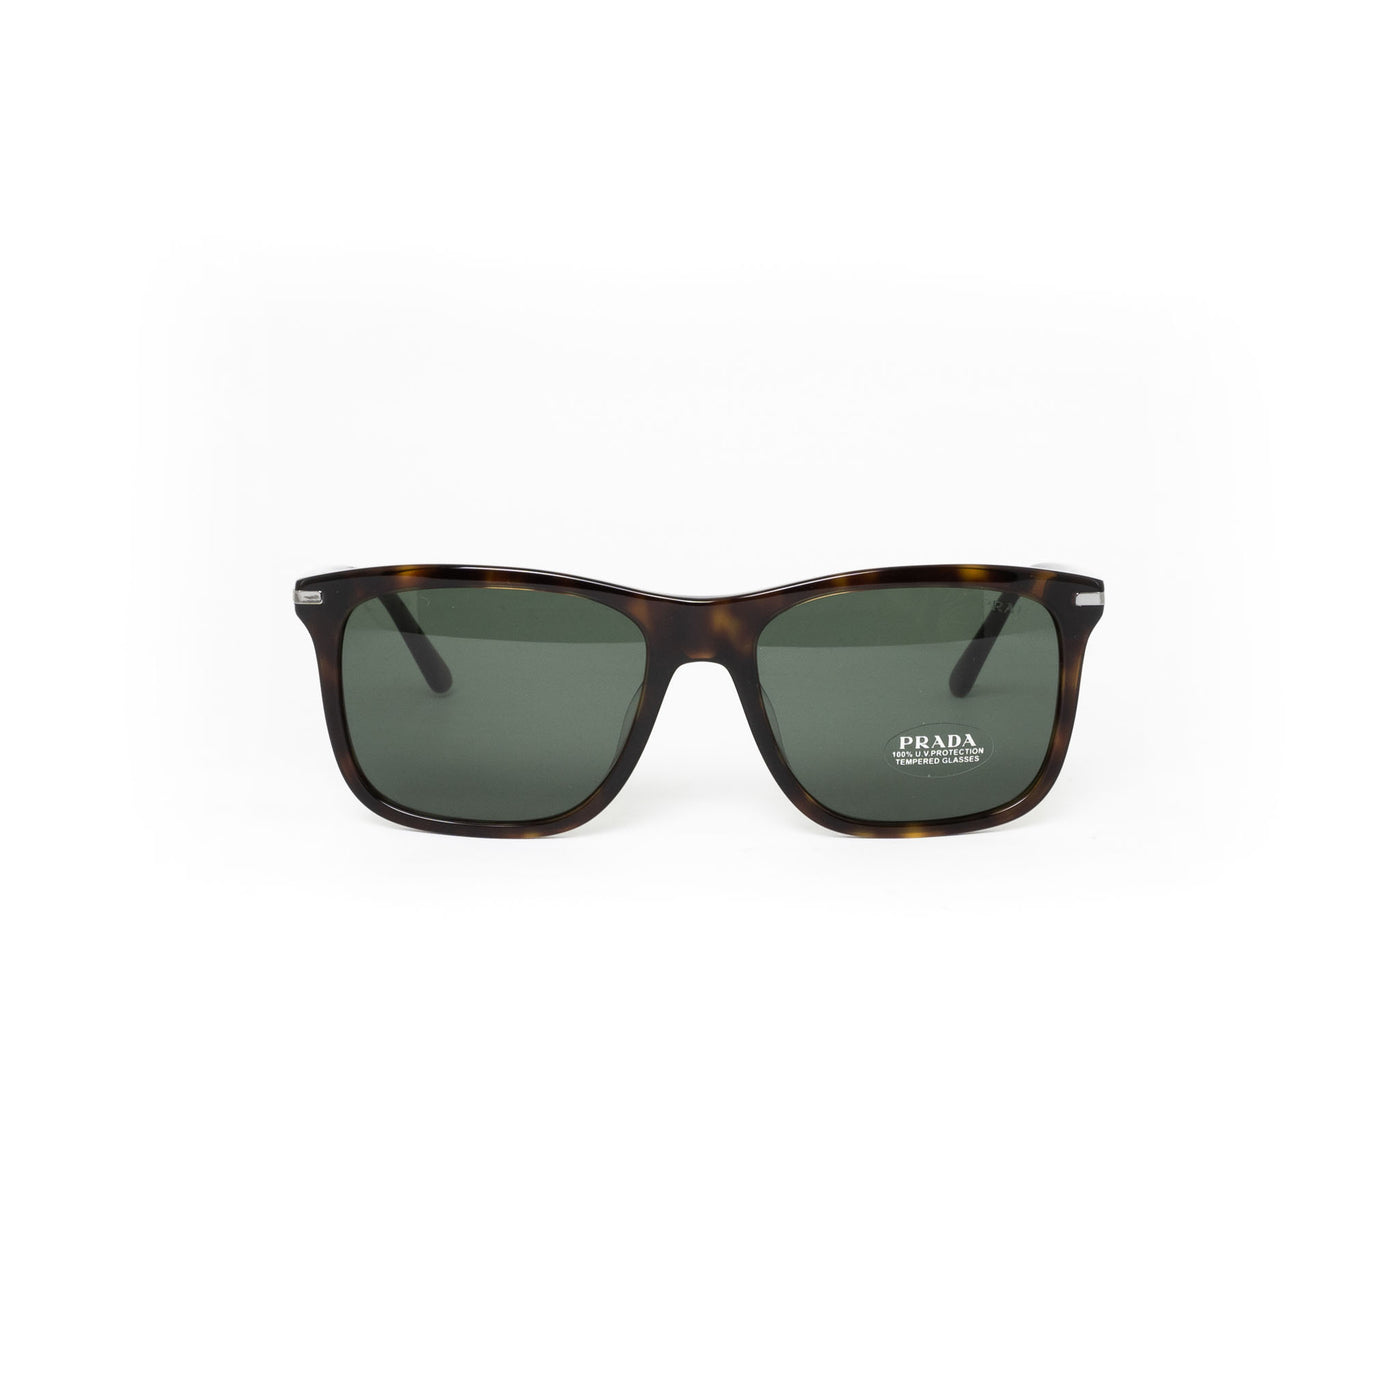 Prada SPR18WF/2AU/0B0 |  Sunglasses - Vision Express Optical Philippines